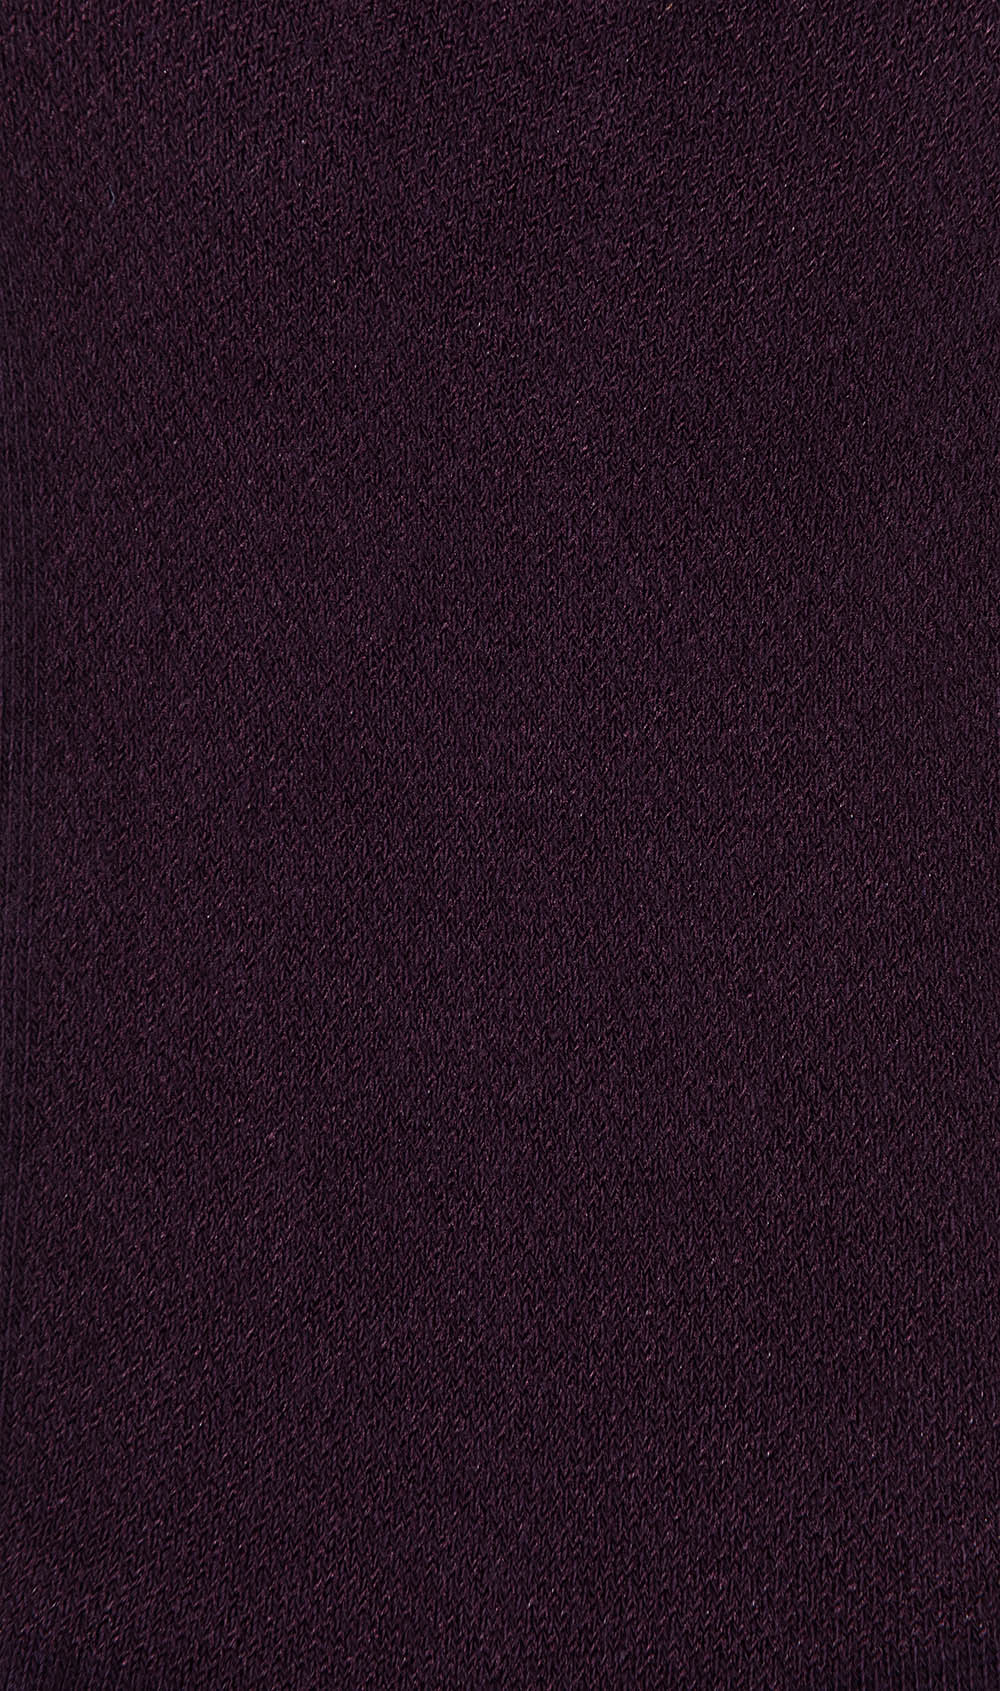 Plum Purple Low-Cut Socks Pattern